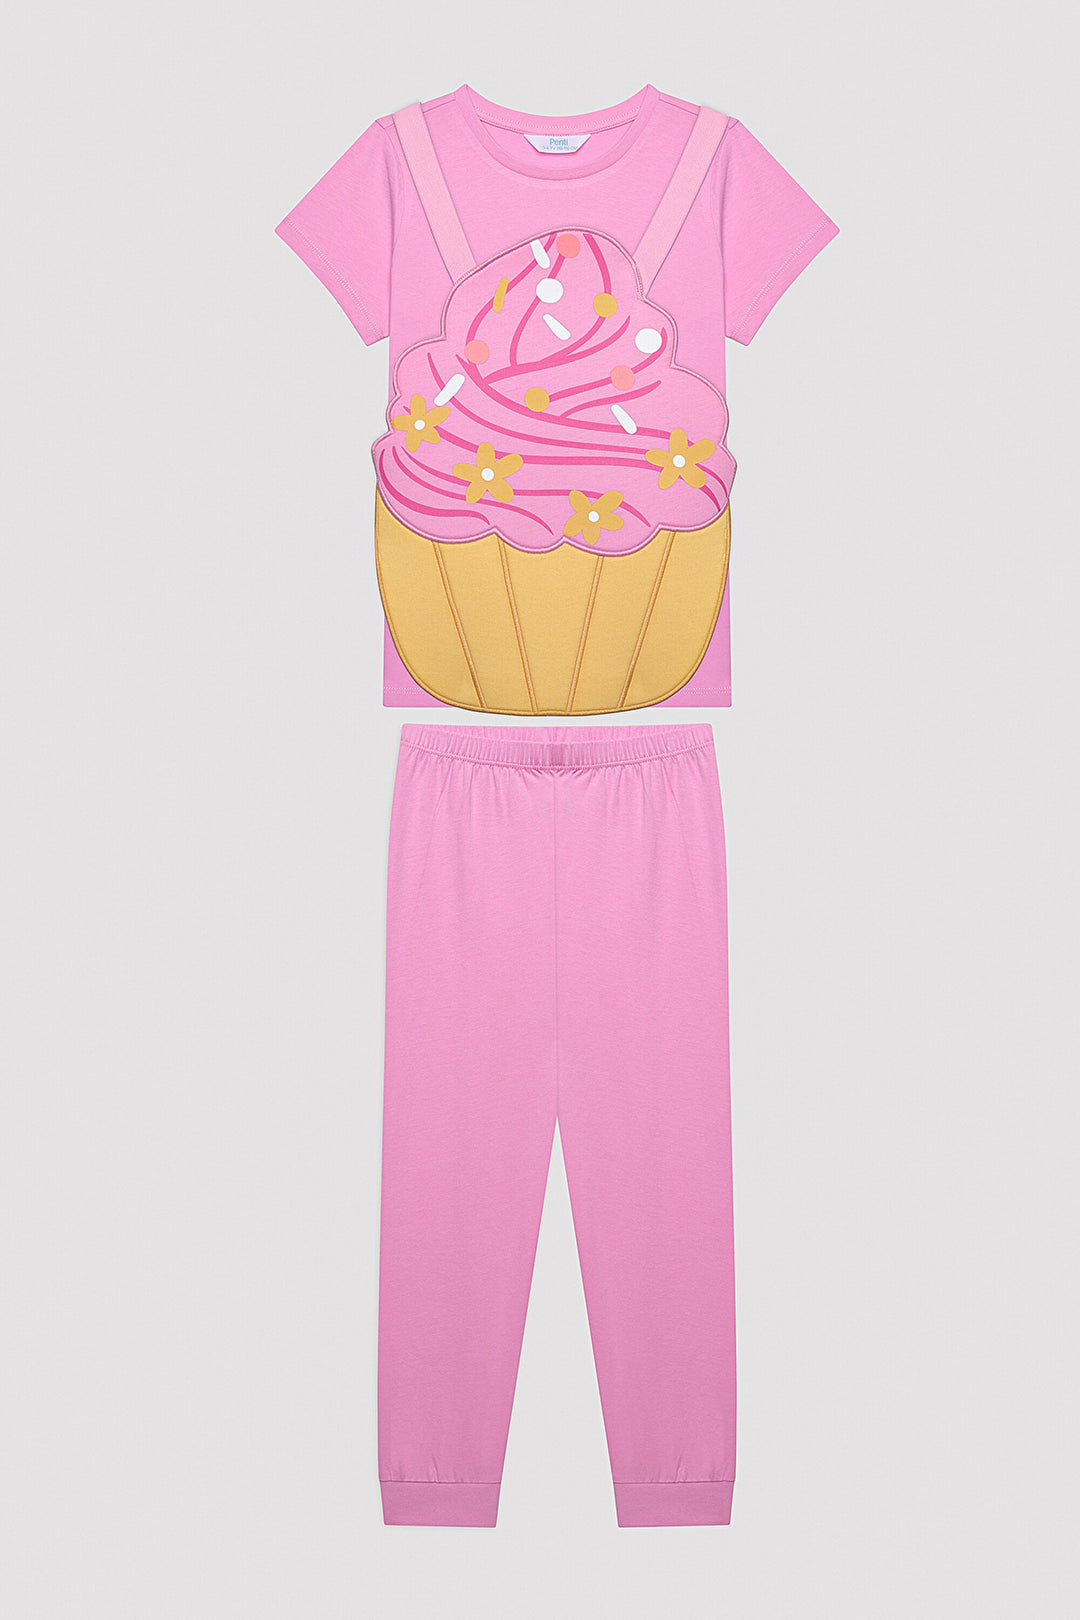 Girls Cupcake Multicolored Pajama Set